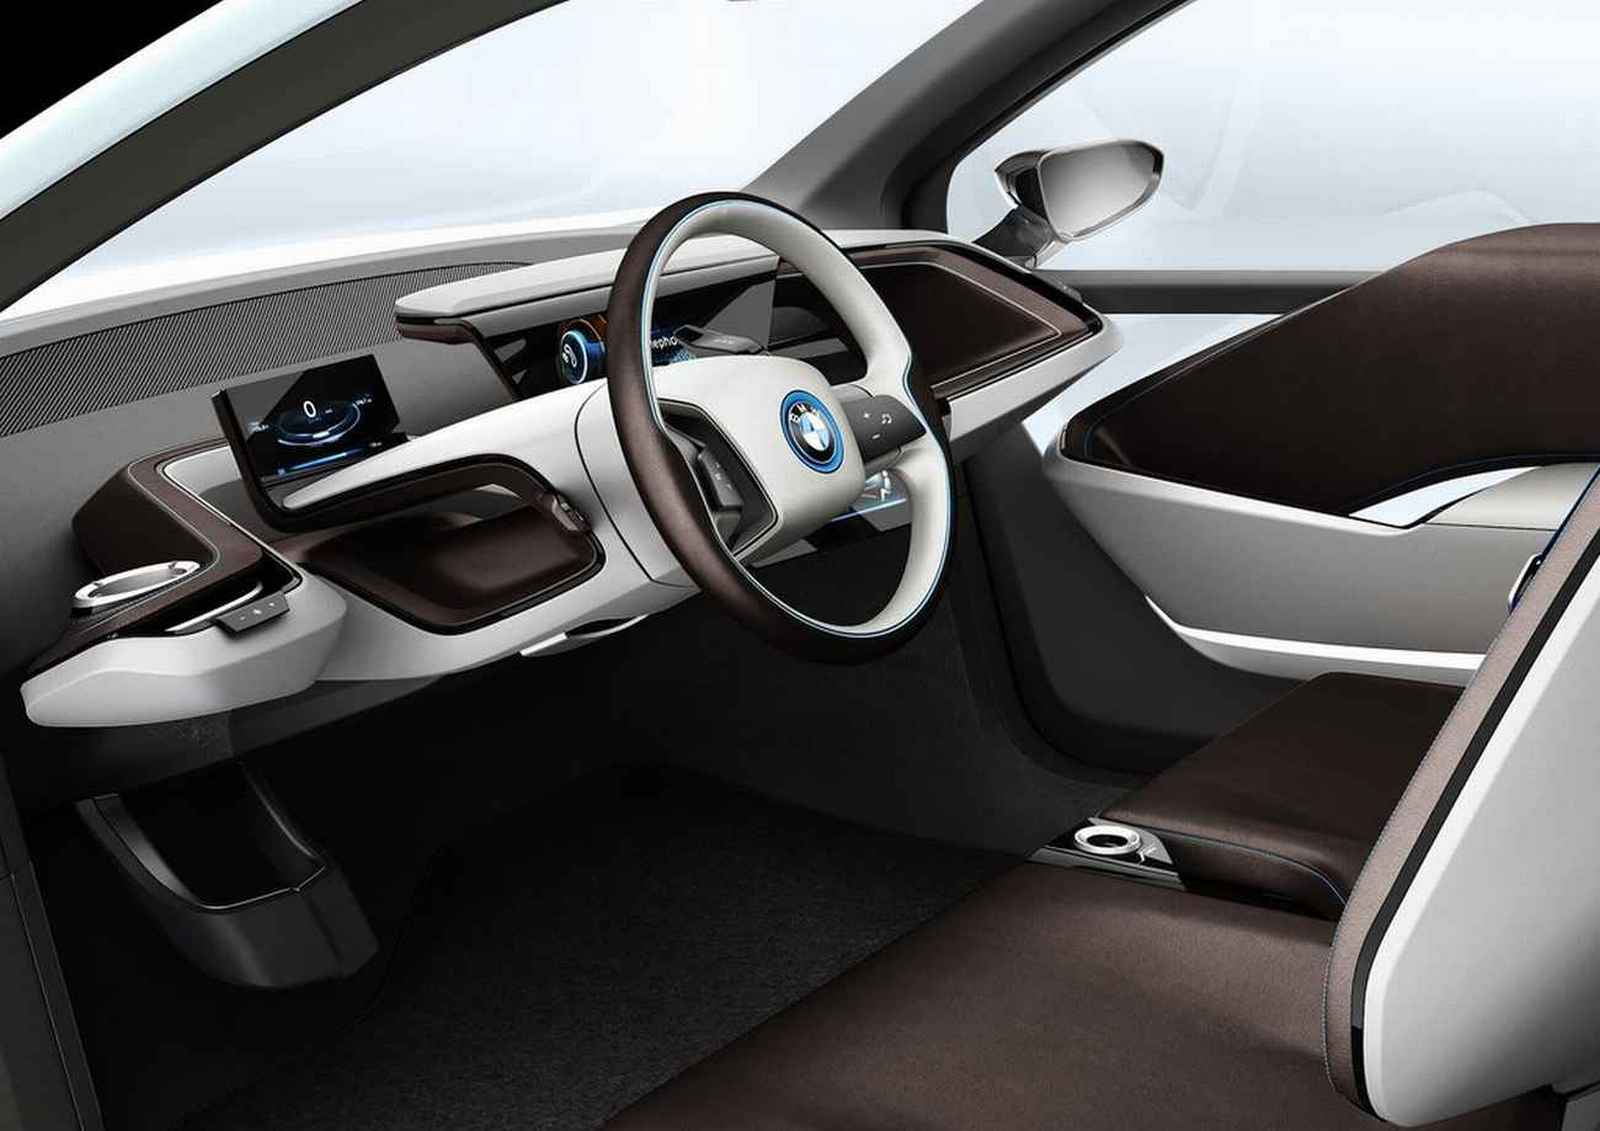 BMW i3 concept Car Interior Photos